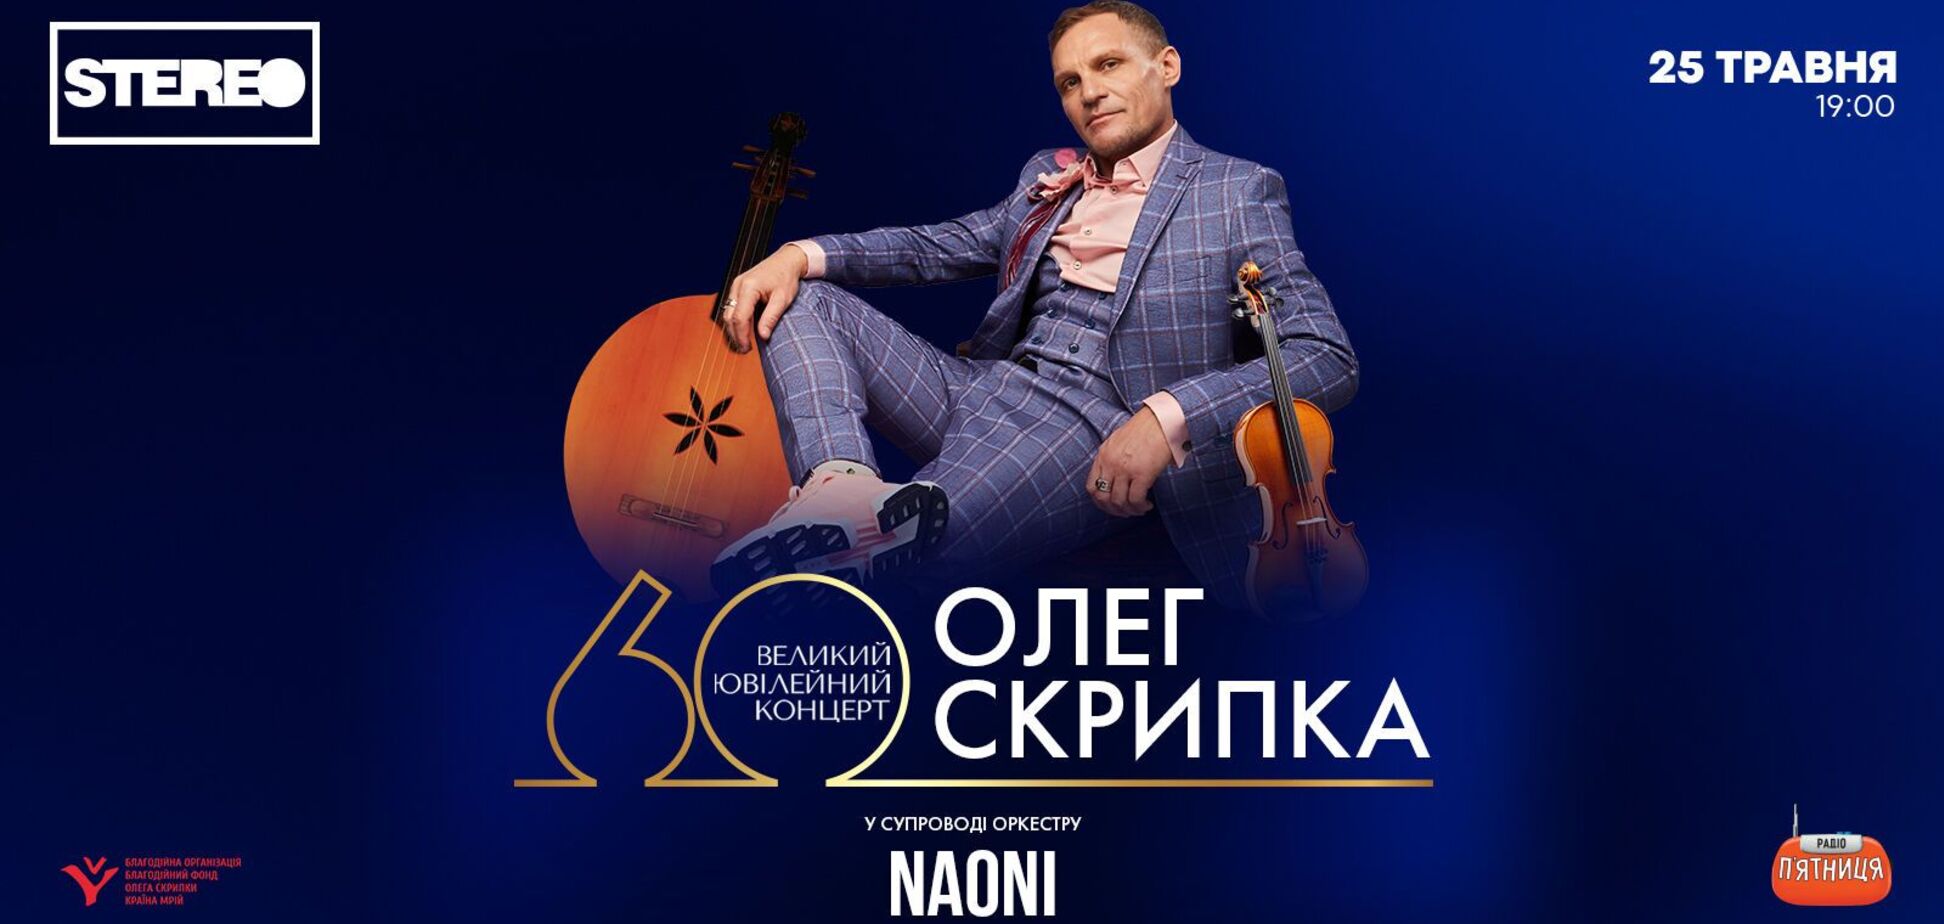 'Приходите люди на вечер в Клуб'. Олег Скрипка сыграет большой юбилейный концерт в честь своего 60-летия